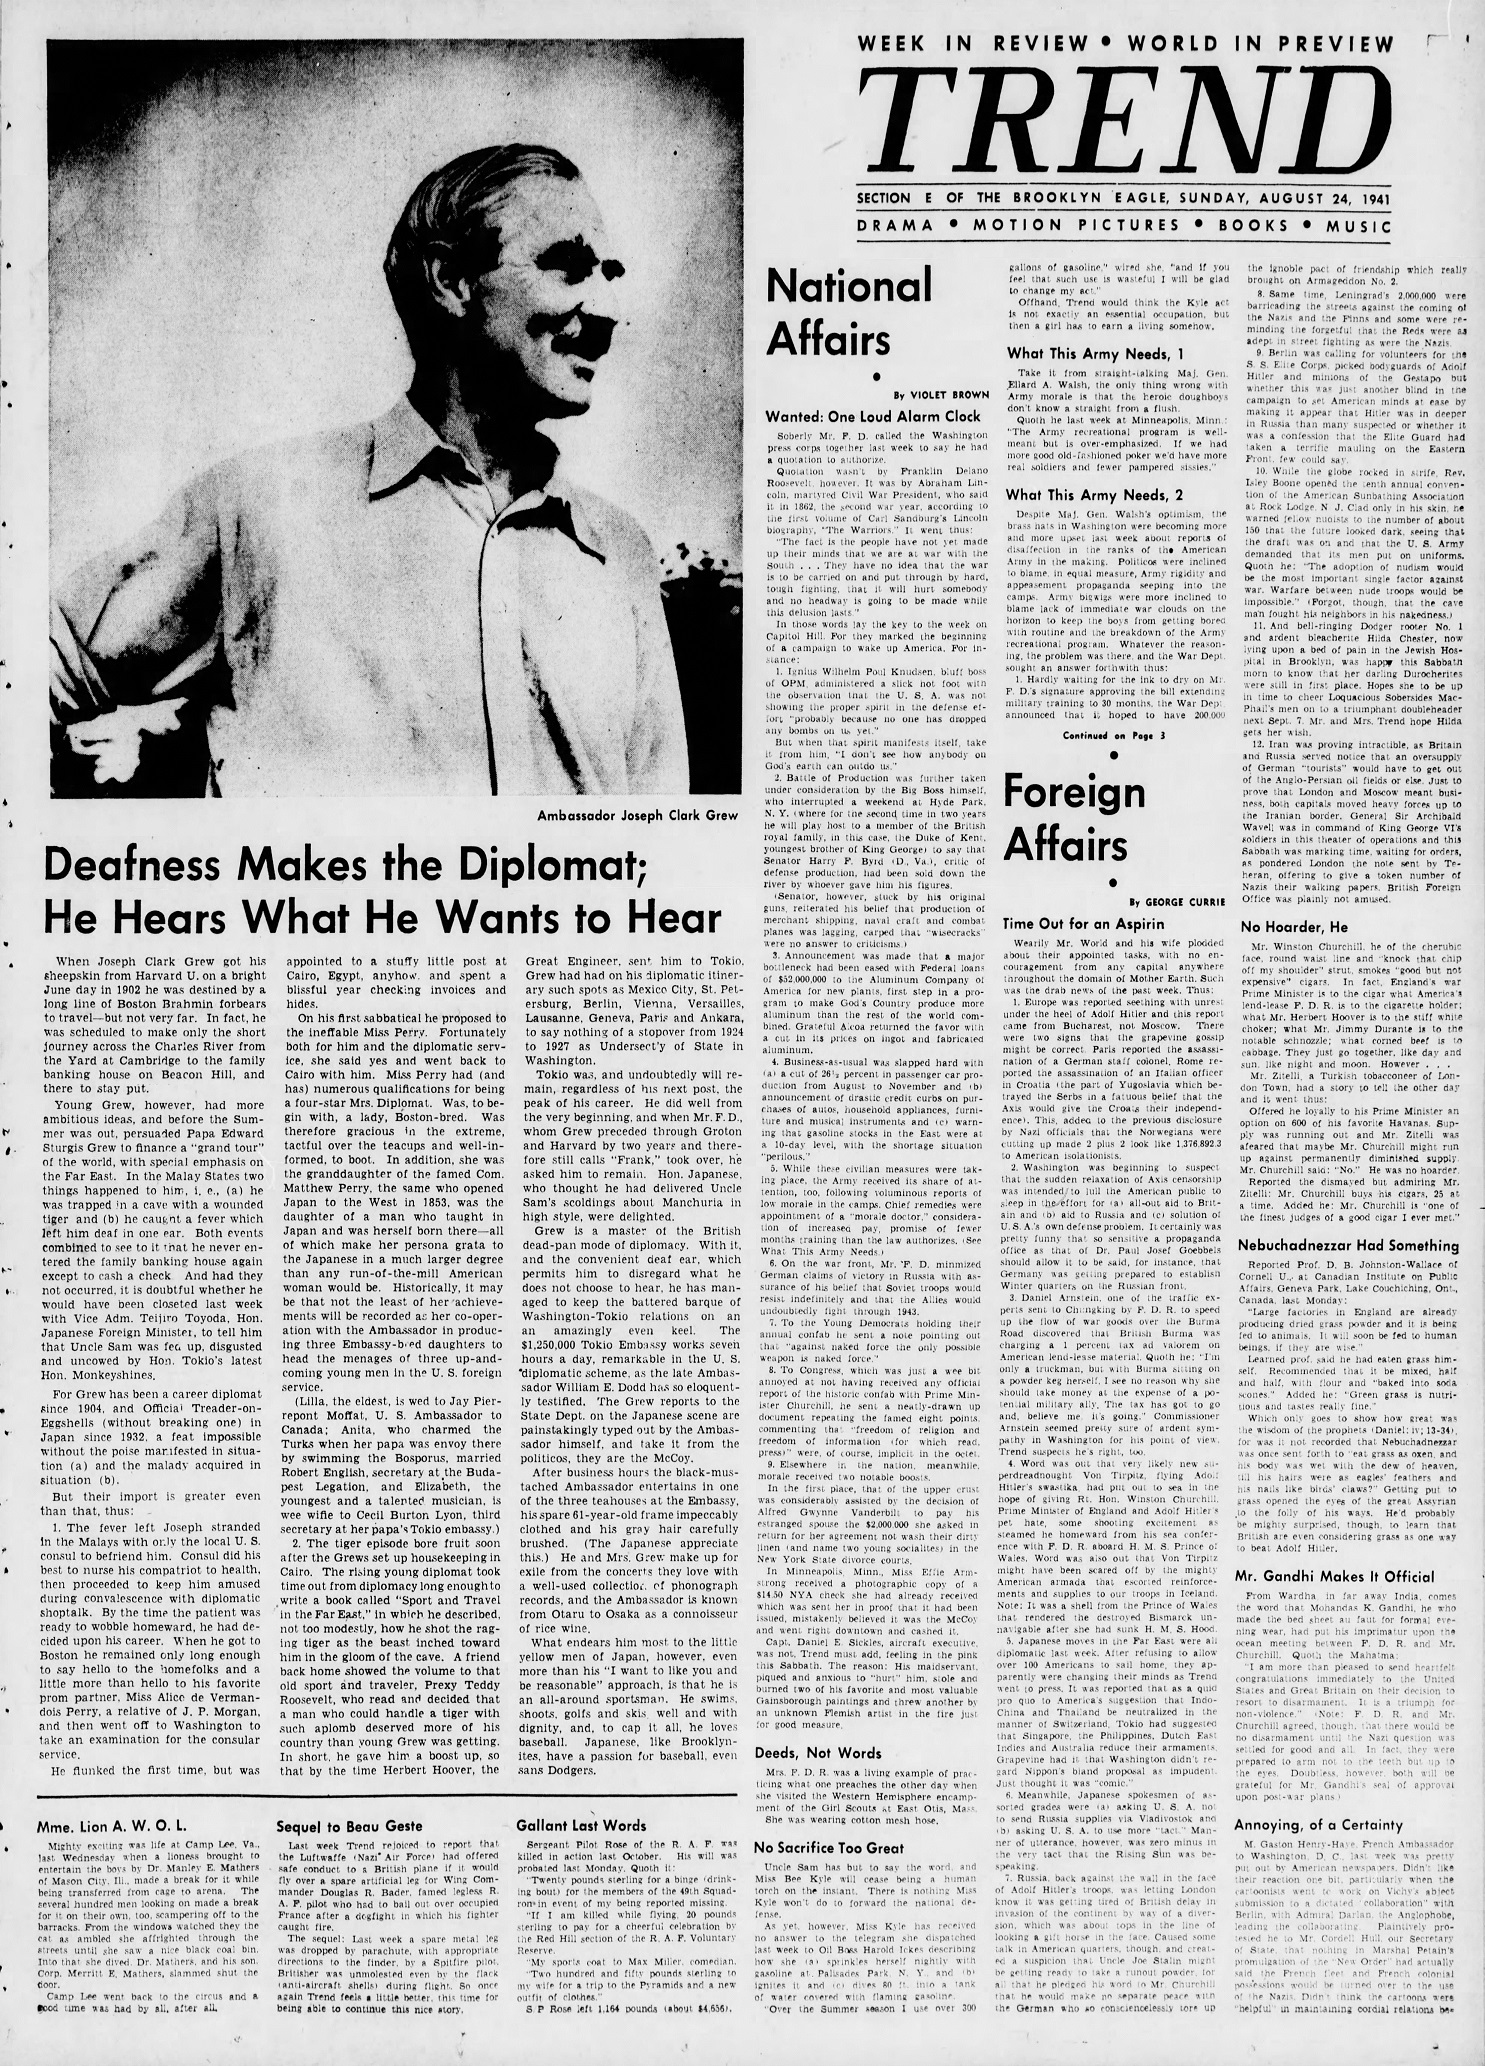 The_Brooklyn_Daily_Eagle_Sun__Aug_24__1941_(3).jpg